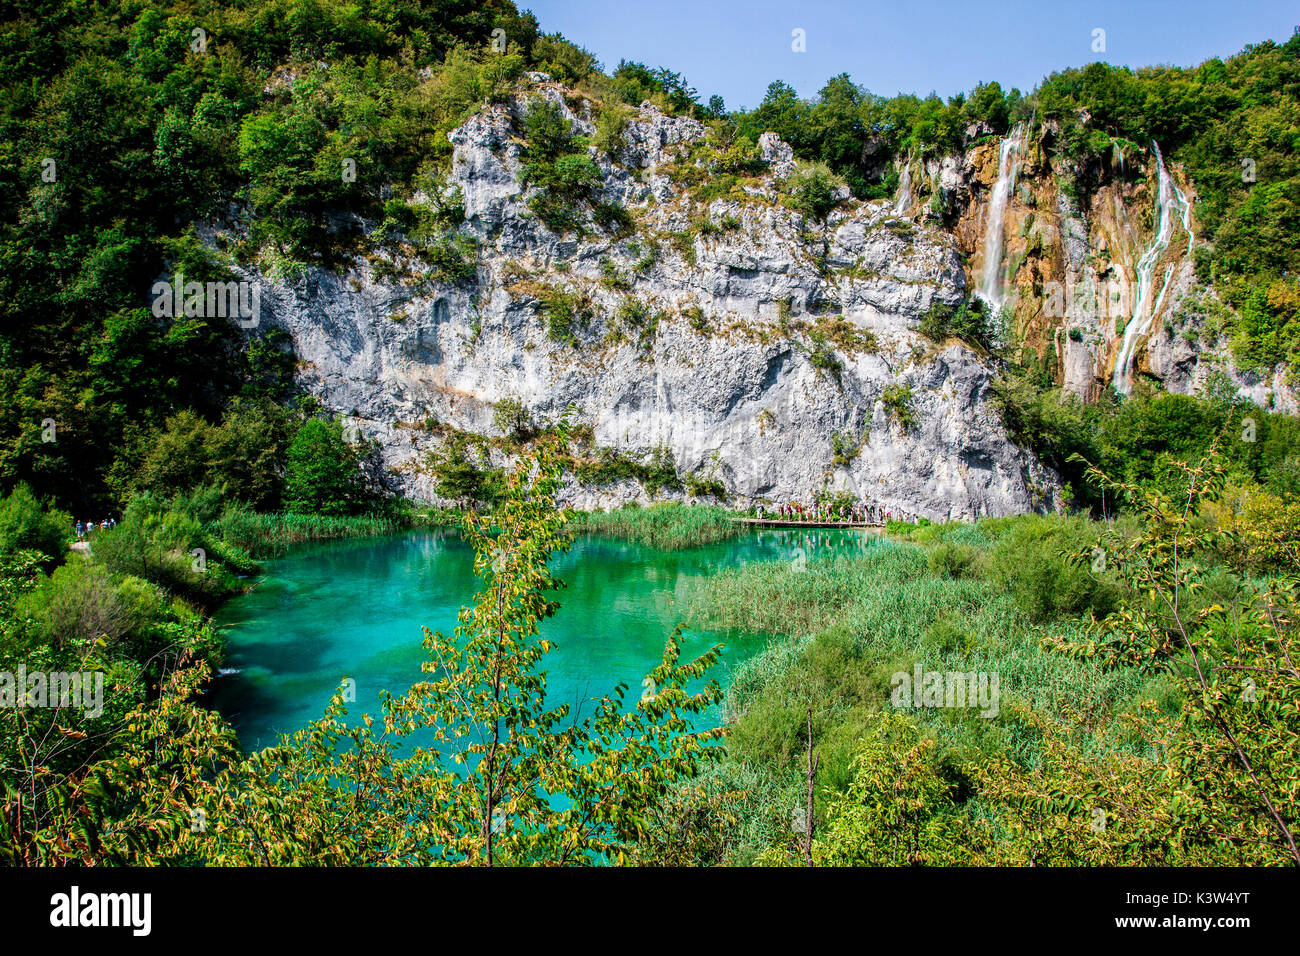 Les lacs de Plitvice, Croatie, Europe. Les étangs et chutes dans le vert de la végétation Banque D'Images